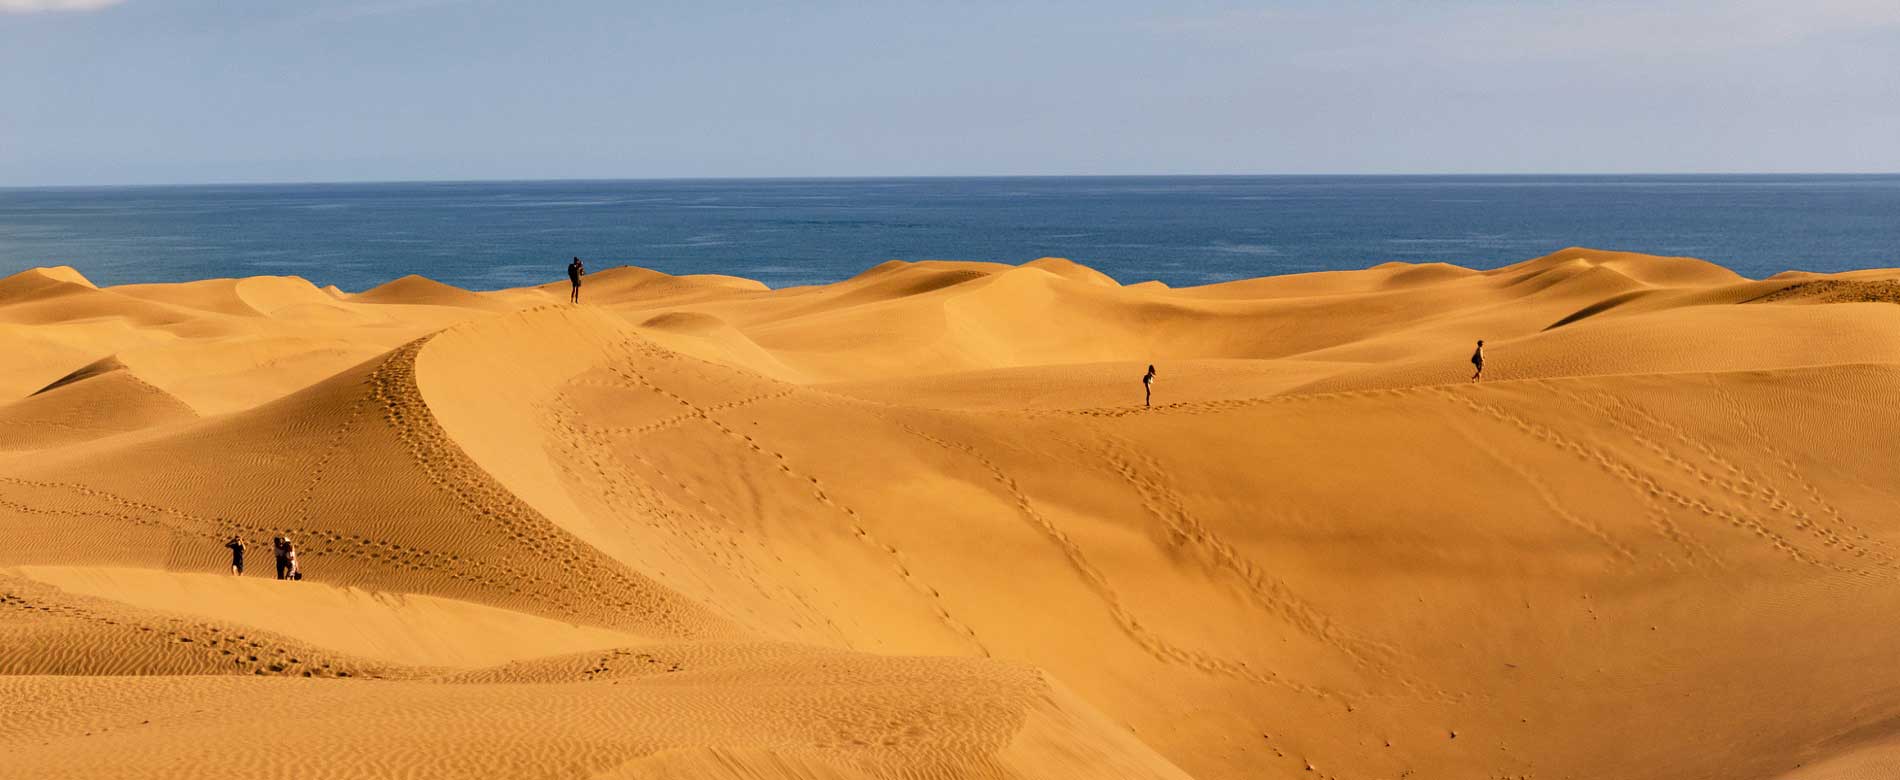 Dunes on the beach in Maspalomas.